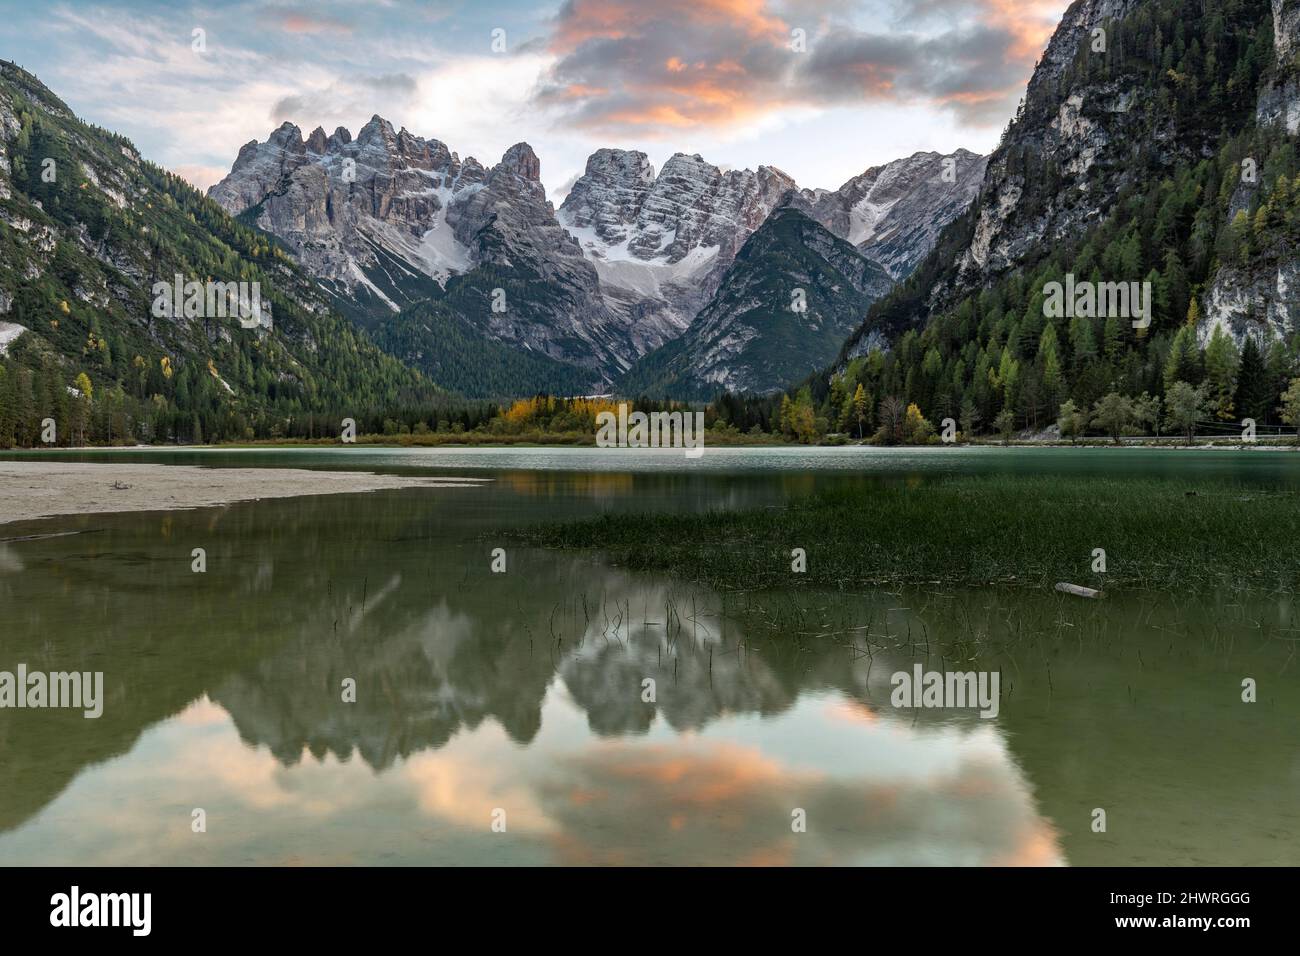 Lago di Landro with Cristallo mountains reflected on the lake, Dolomites, Italian Alps Stock Photo